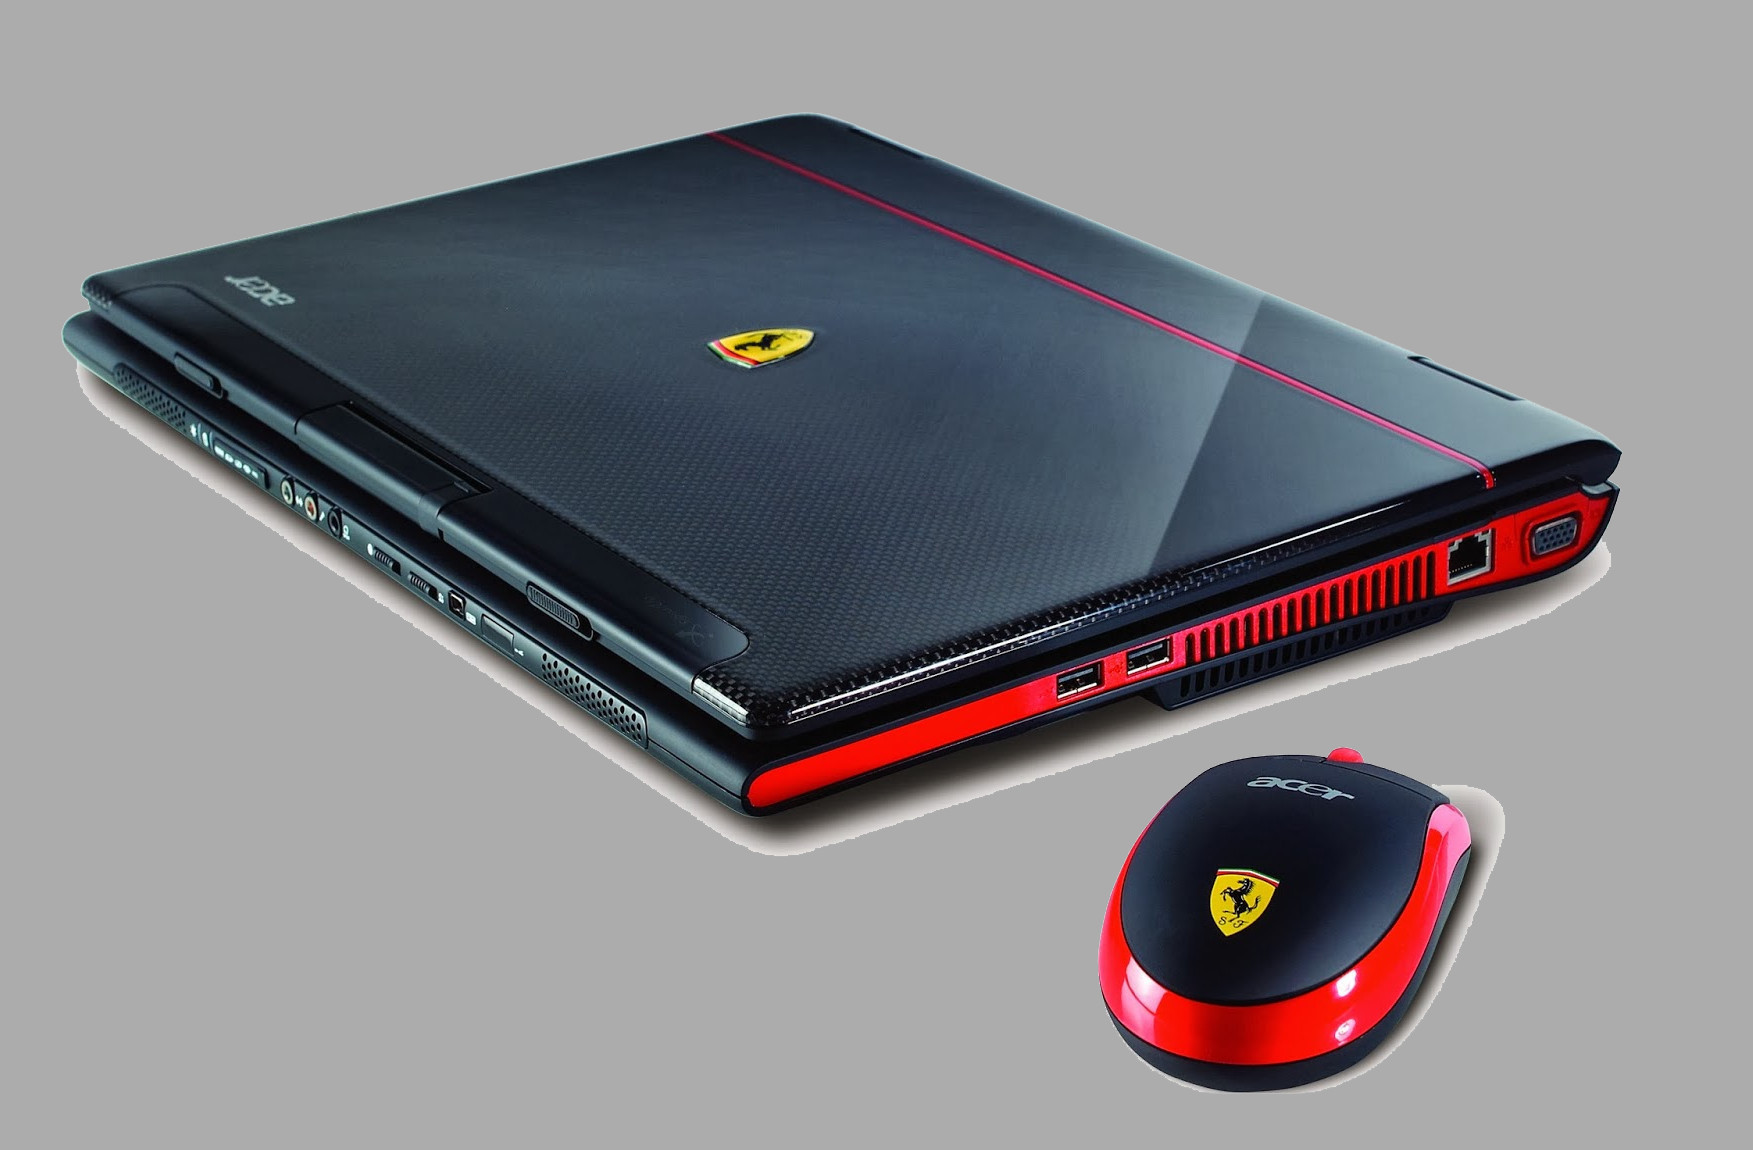 Bonus – 11. Acer Ferrari 1100 – 3.000 USD